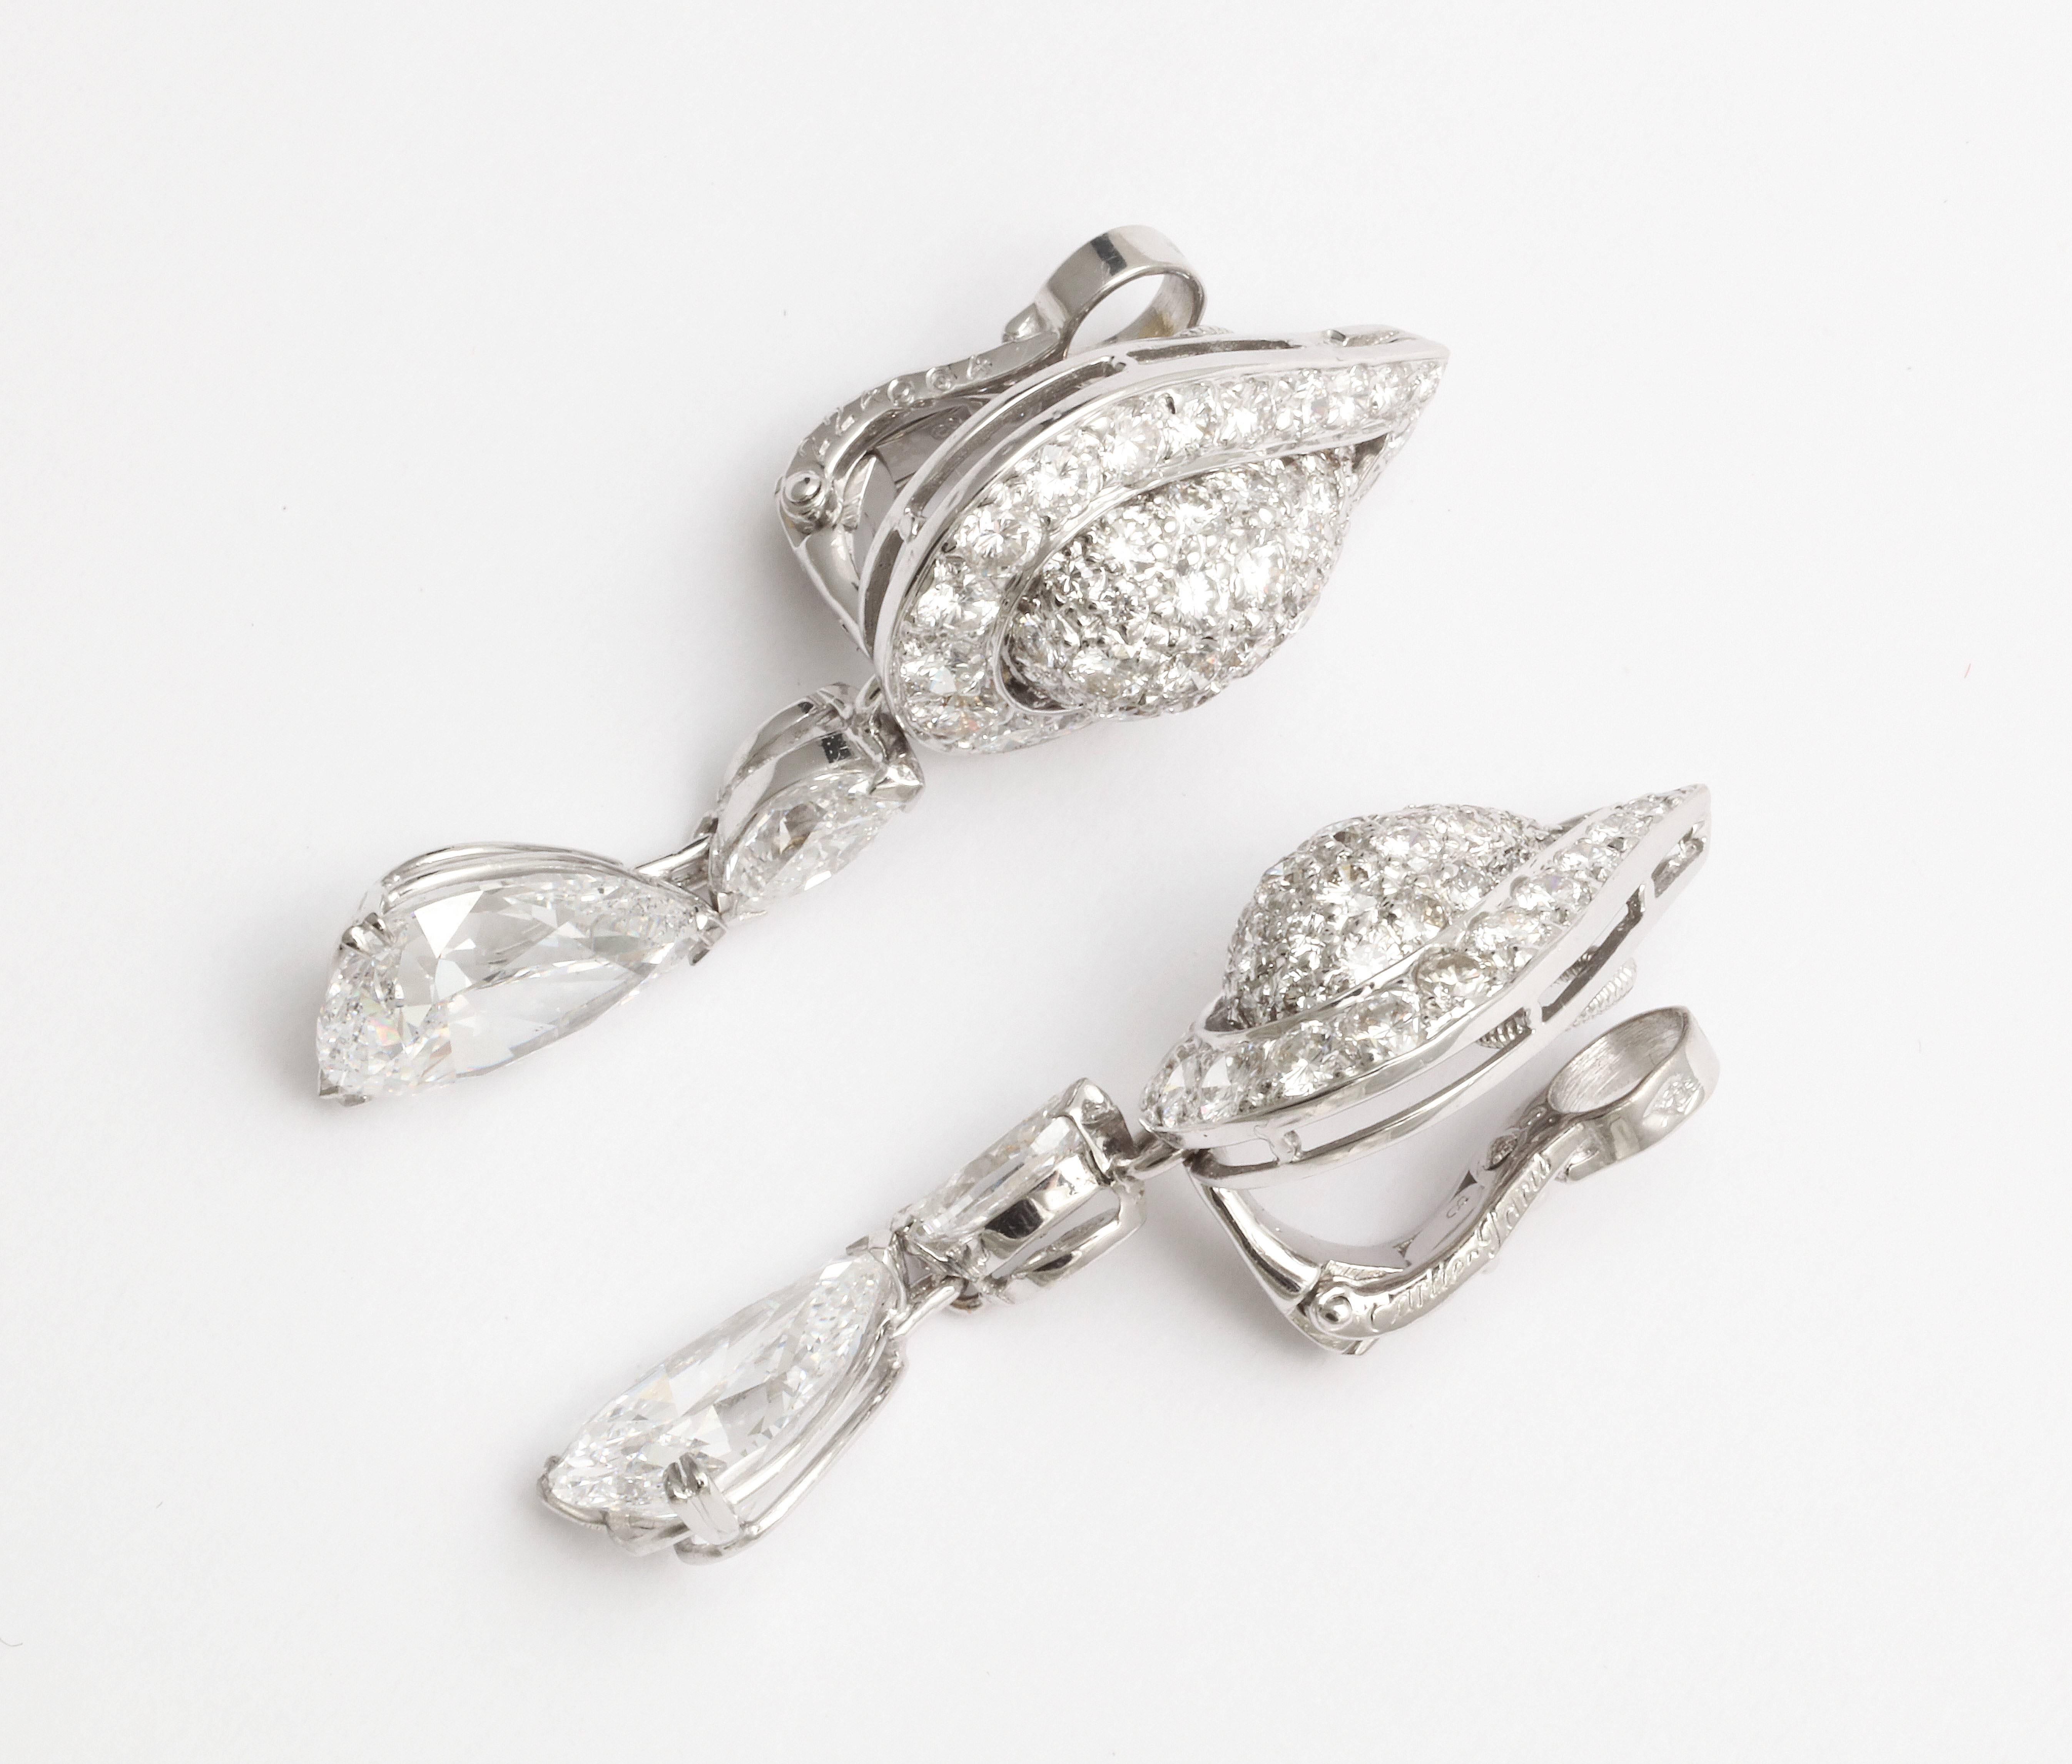 cartier diamond drop earrings